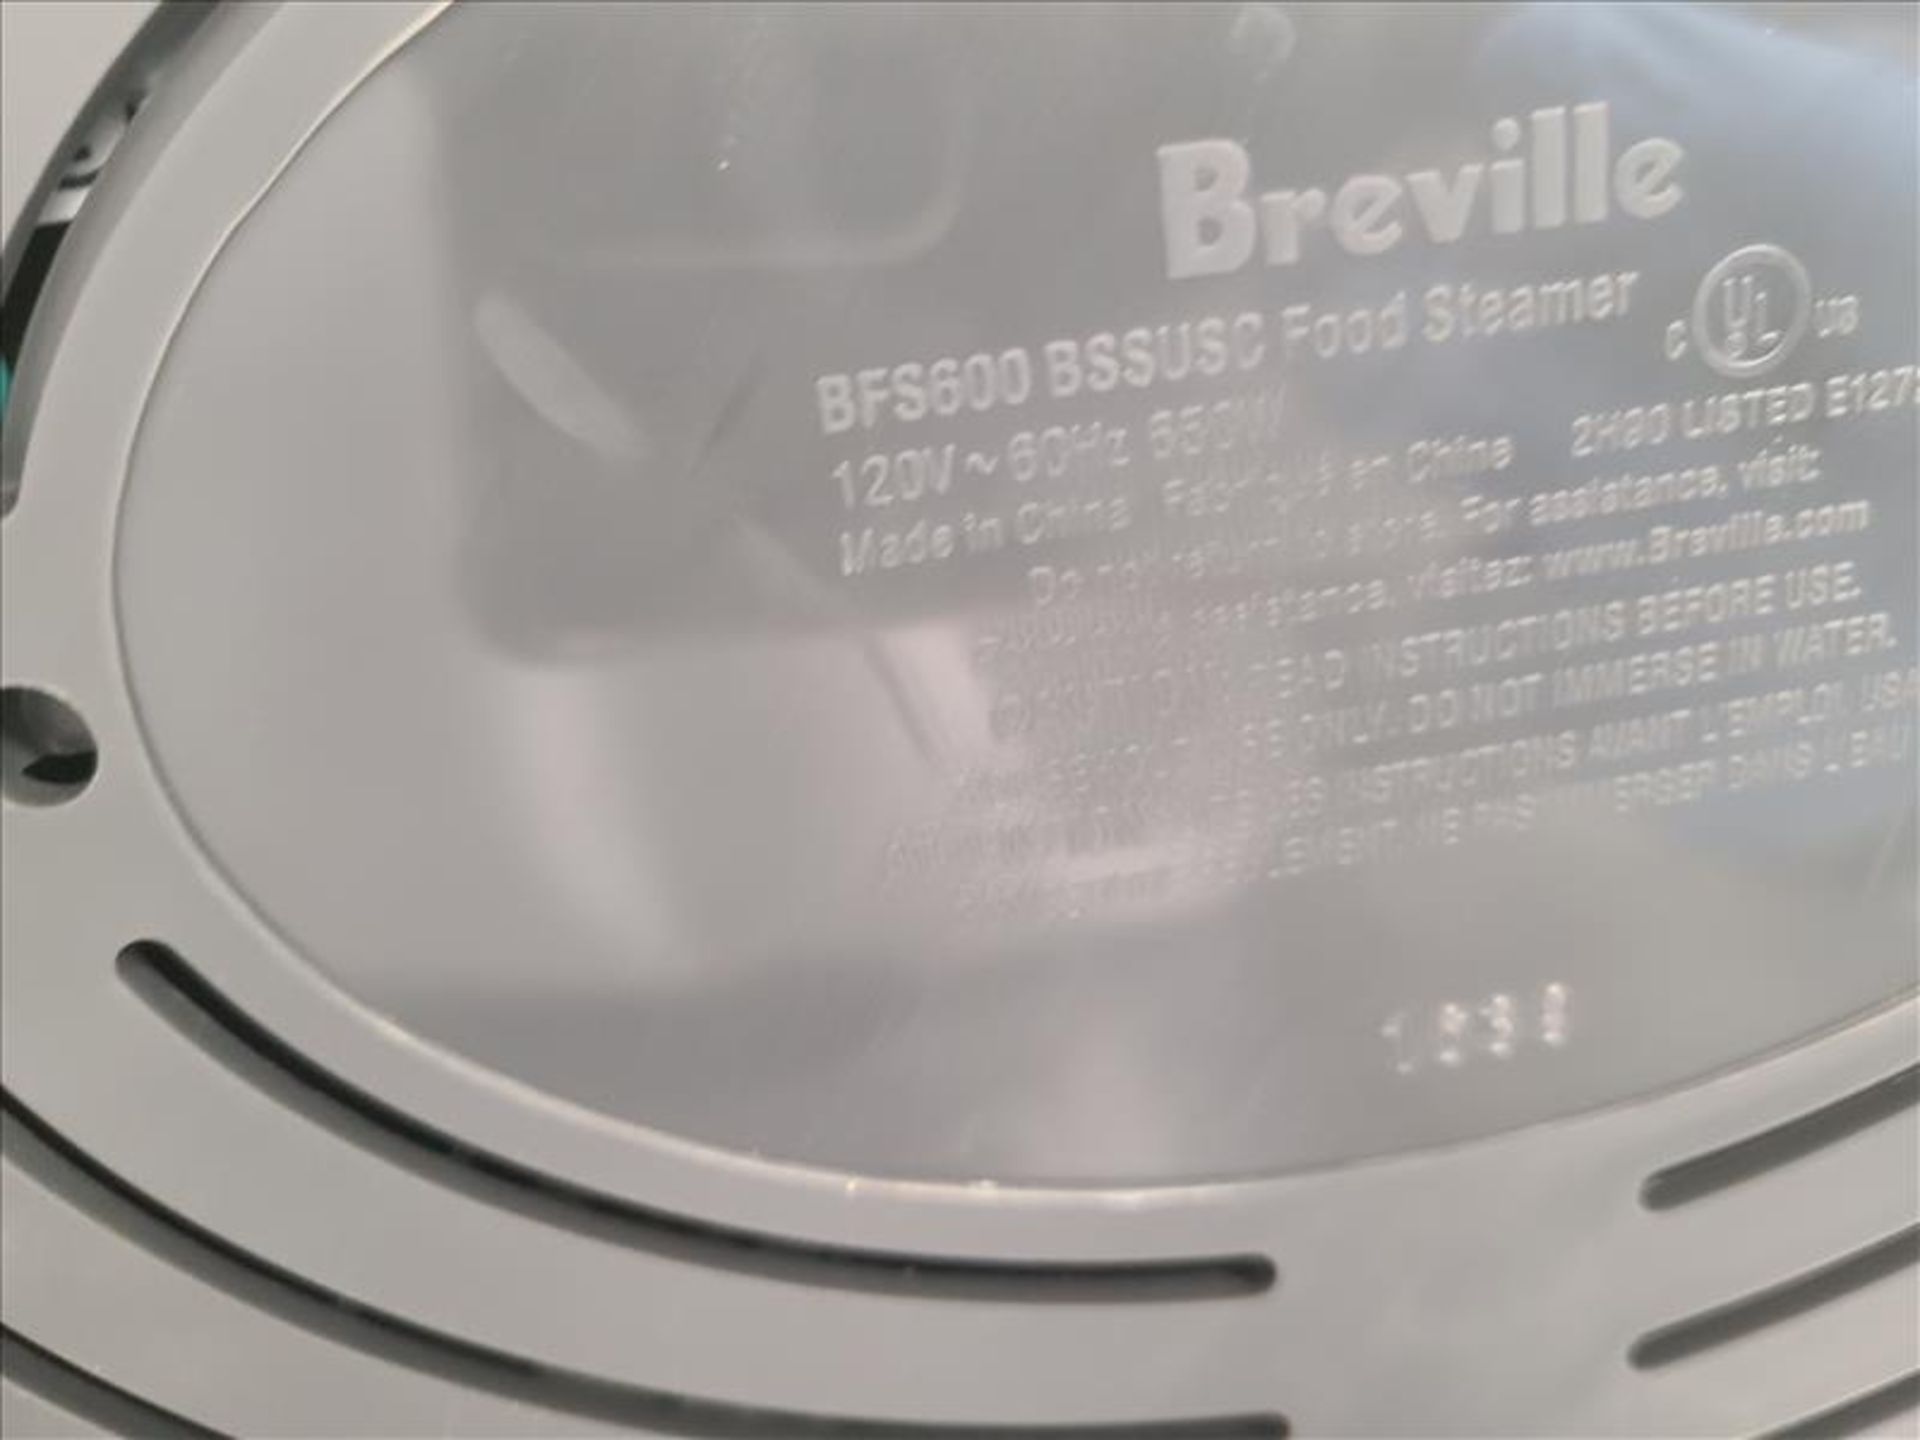 Breville Digital Food Steamer, mod. BFS600 [Loc.Test Kitchen] - Bild 4 aus 4